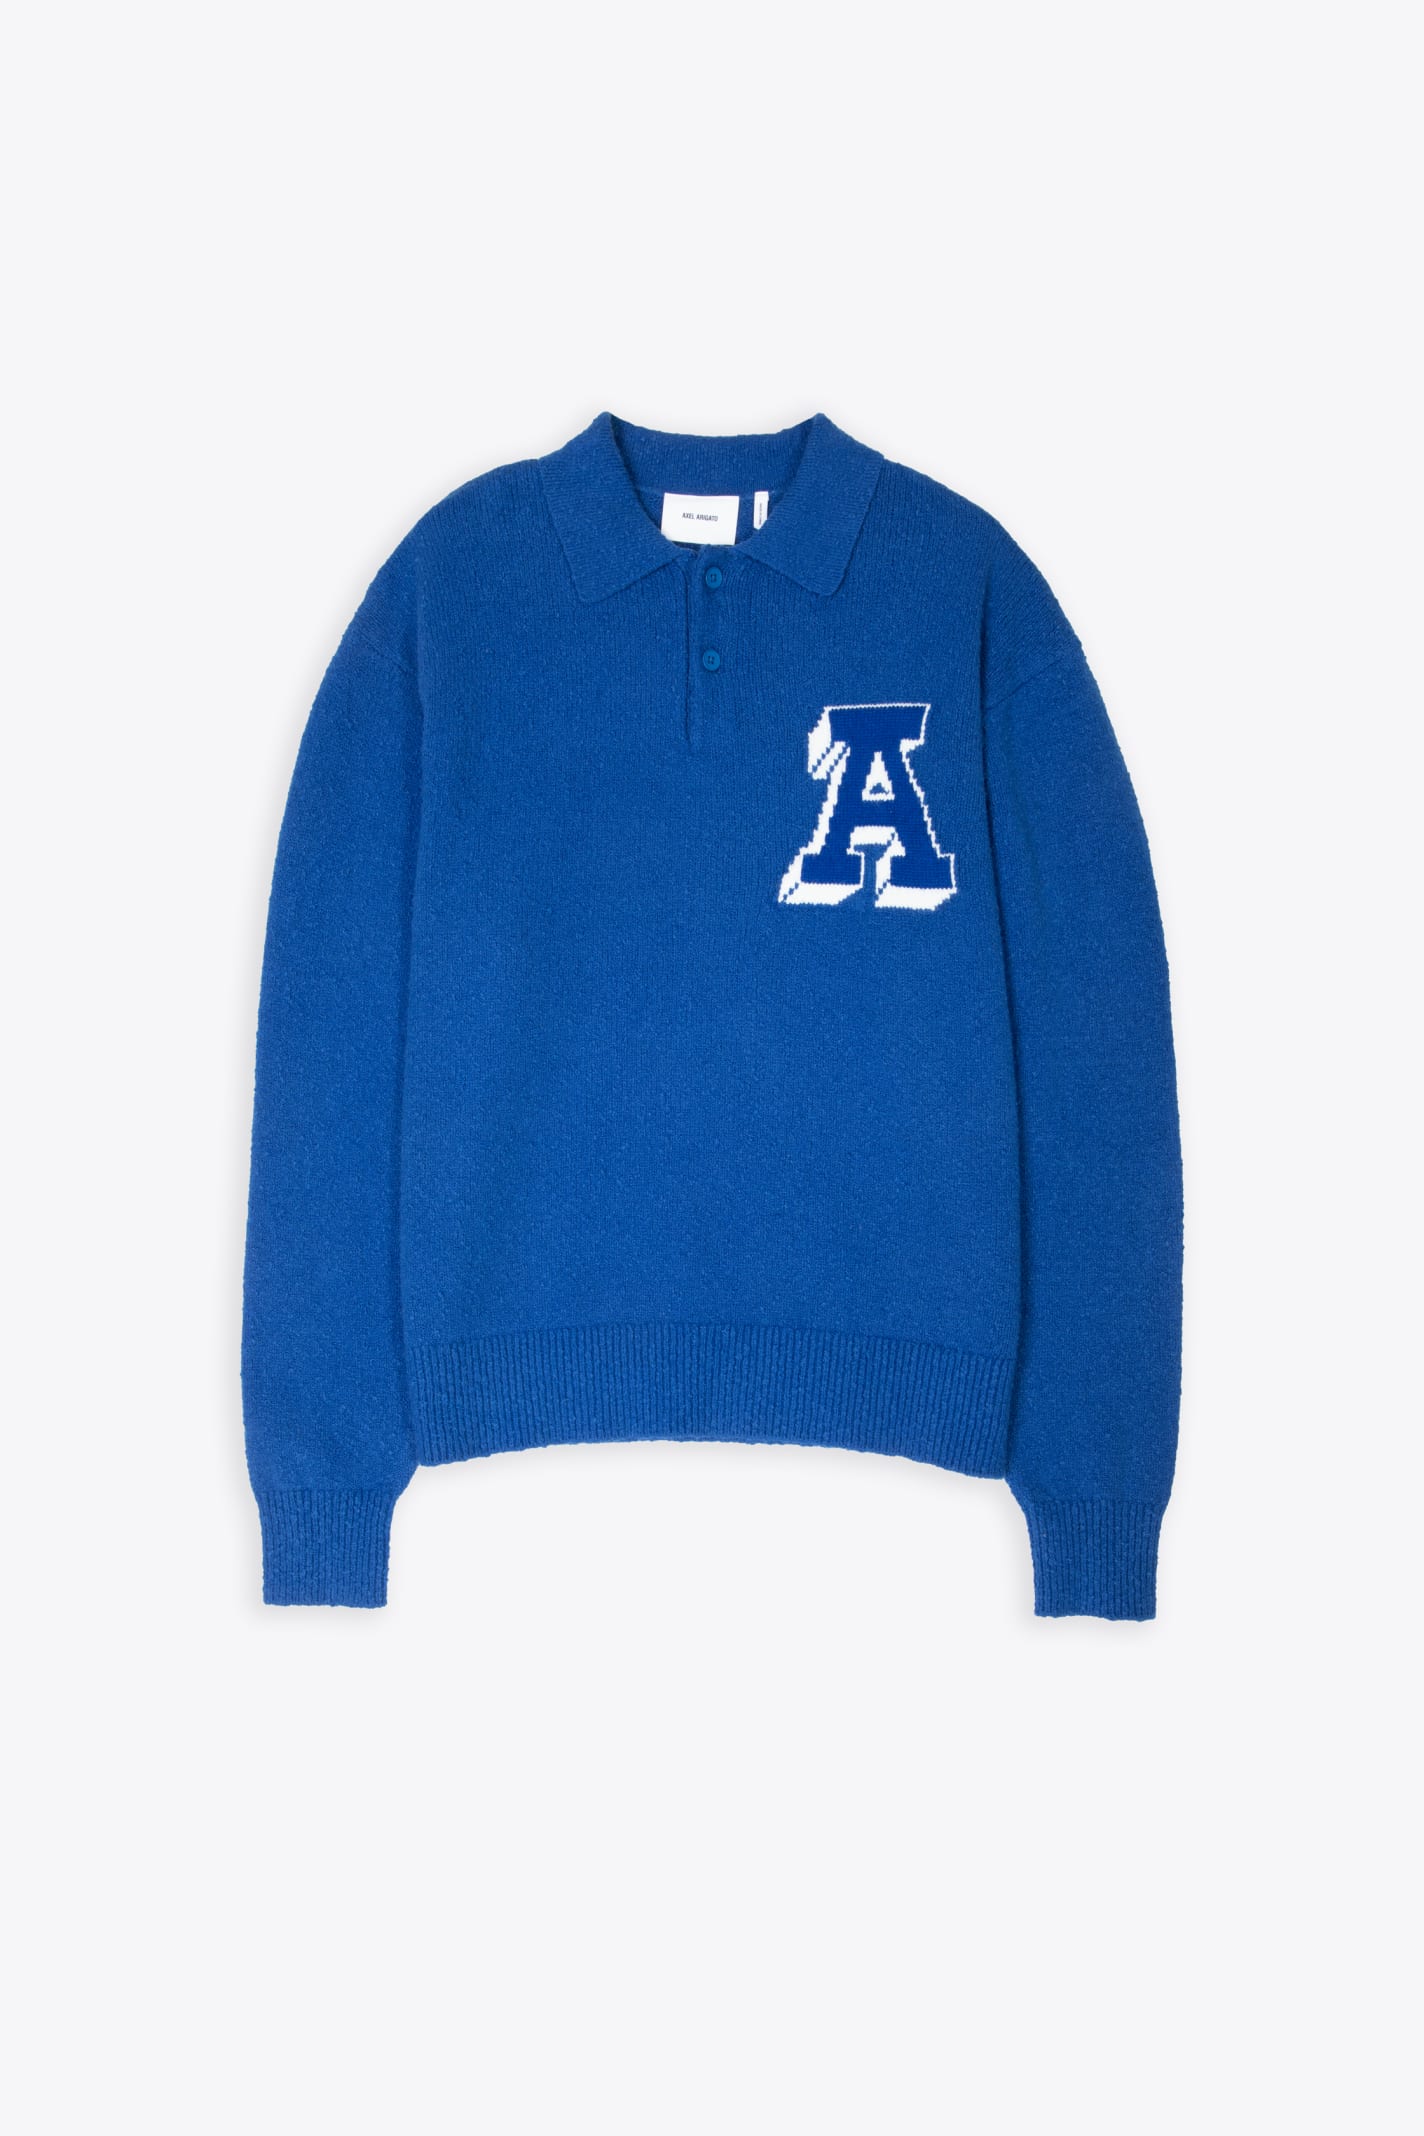 Shop Axel Arigato Team Polo Sweater Royal Blue Cotton Blend Polo Sweater - Team Polo Sweater